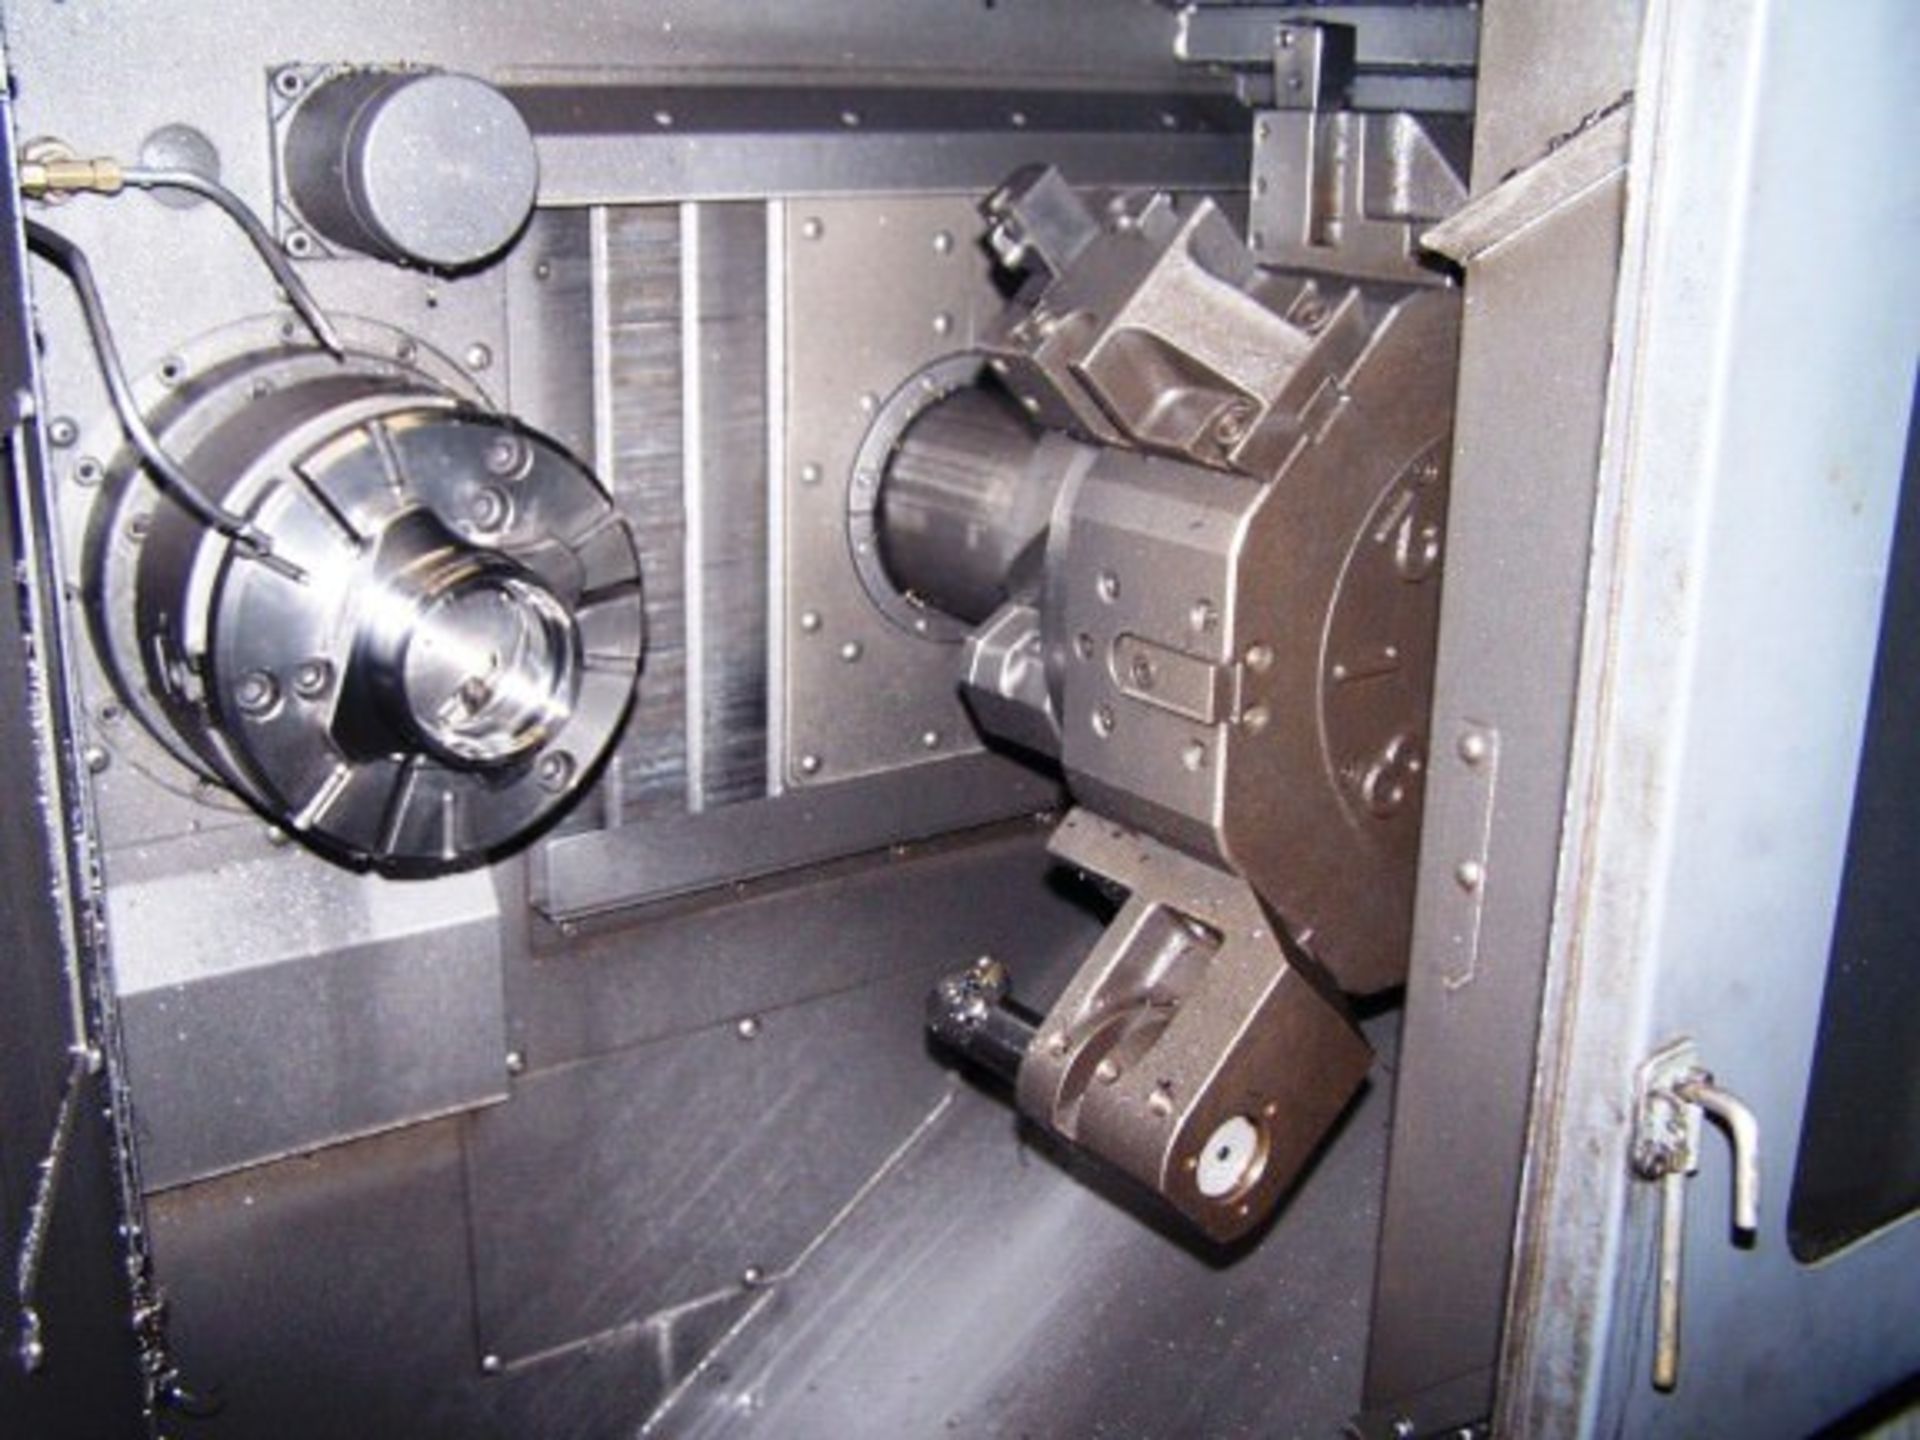 MORI SEIKI RL-203 DUAL SPINDLE CNC TURNING CENTER - Image 6 of 7